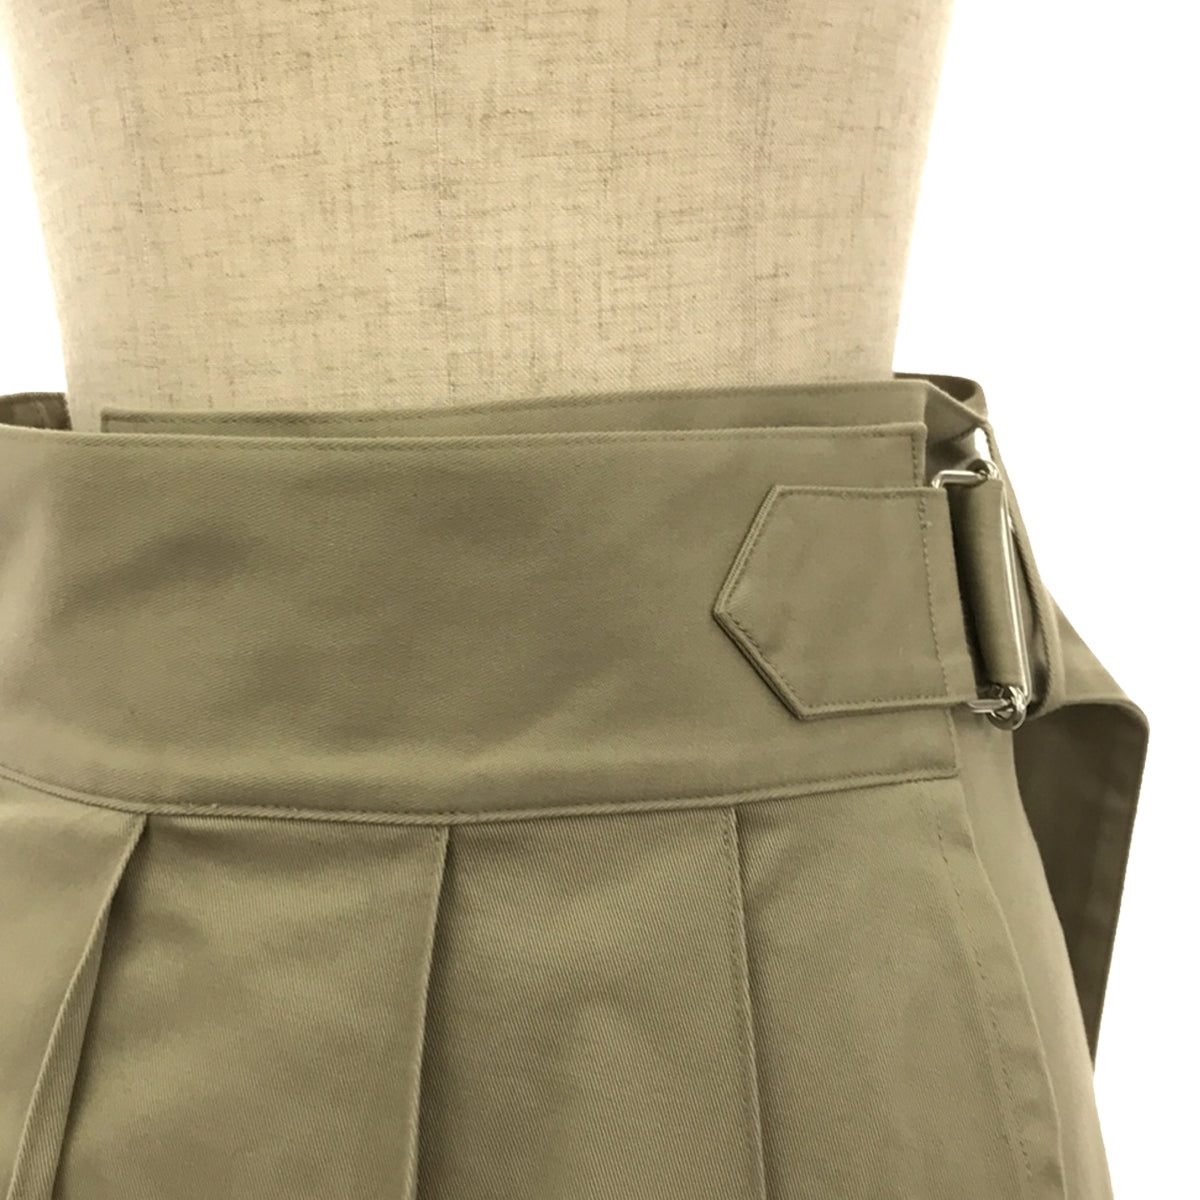 foufou / フーフー | tender skirt 2.0 テンダースカート | 0 | レディース